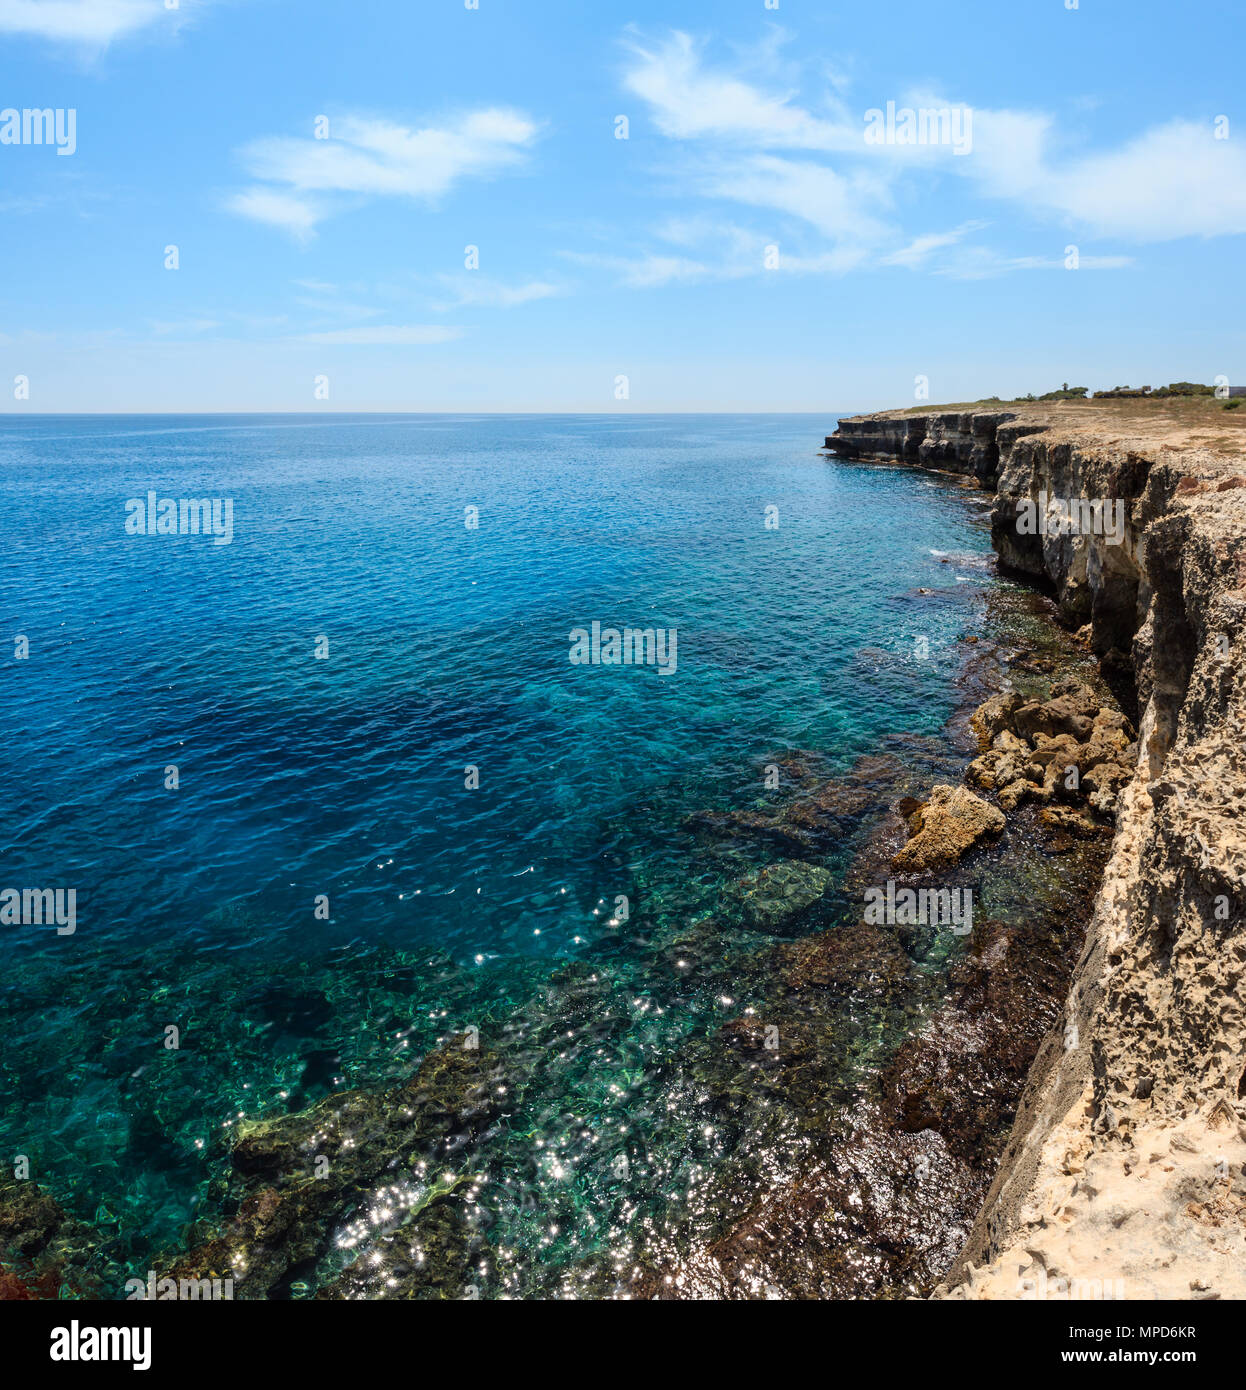 Picturesque seascape with white rocky cliffs, caves, sea bay at Grotta della poesia, Roca Vecchia, Salento Adriatic sea coast, Puglia, Italy. Two shot Stock Photo